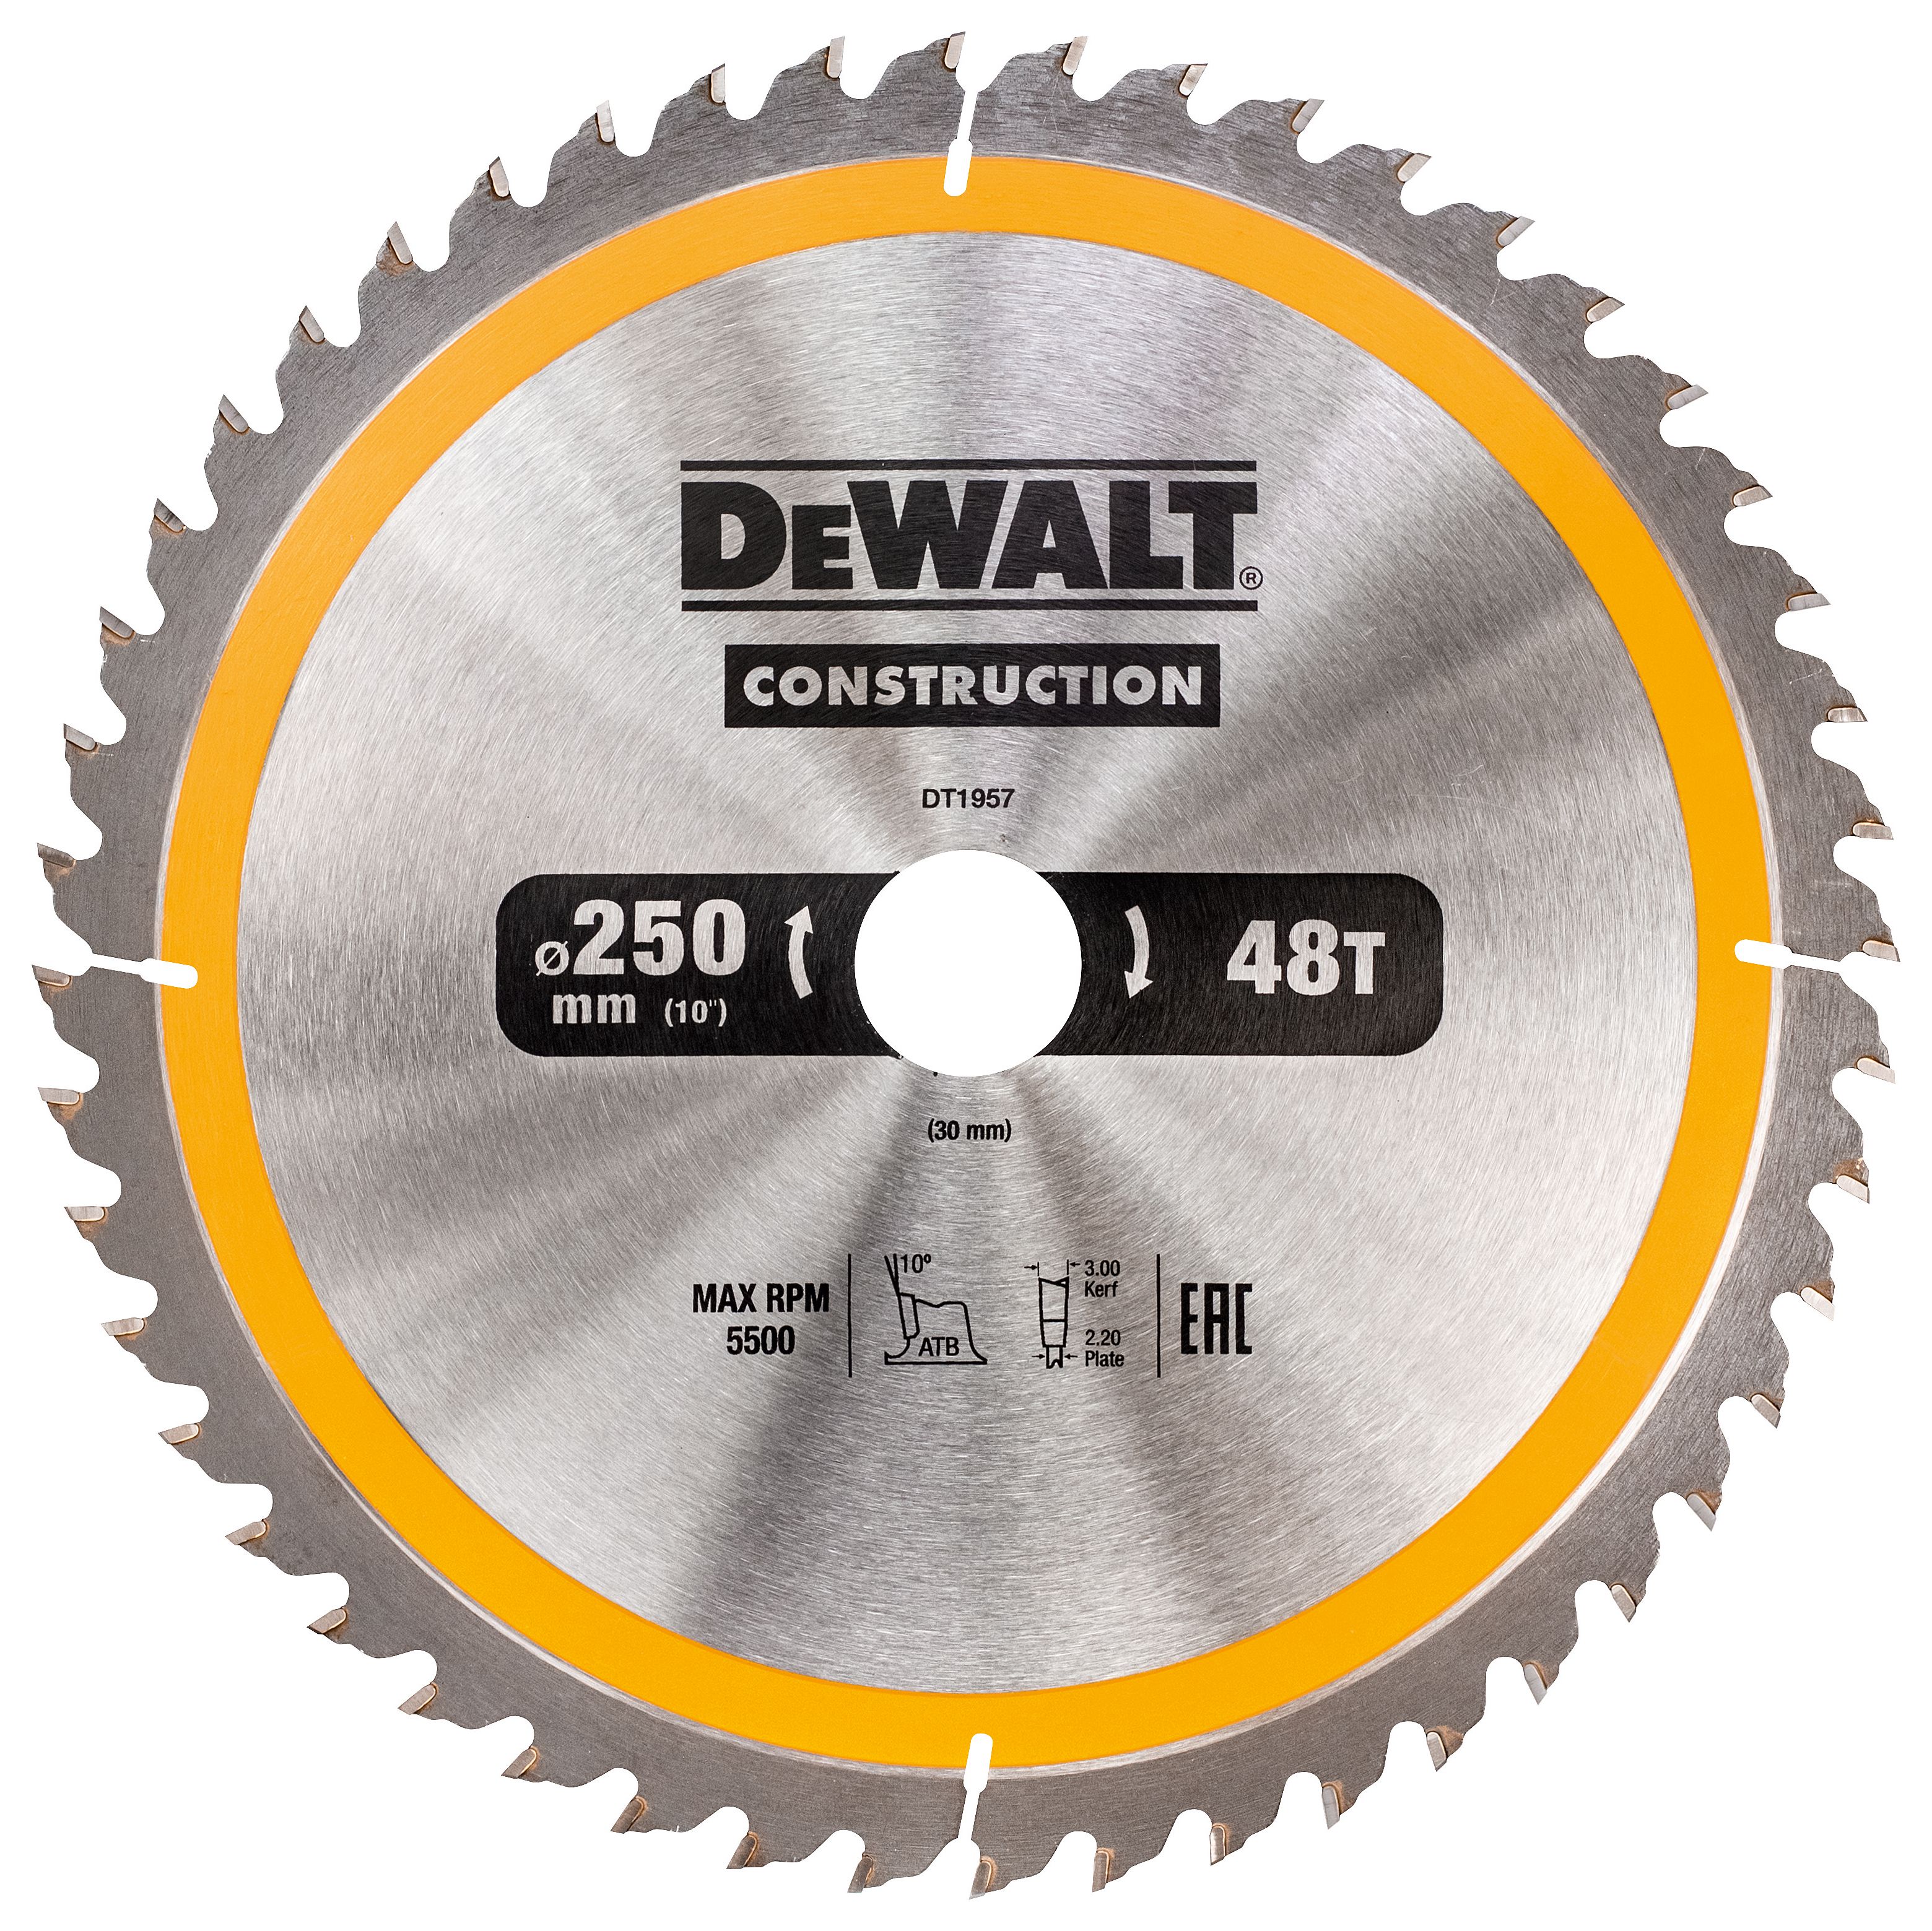 DEWALT DT1957-QZ 48 Teeth Construction Smooth Cut Circular Saw Blade - 250 x 30mm